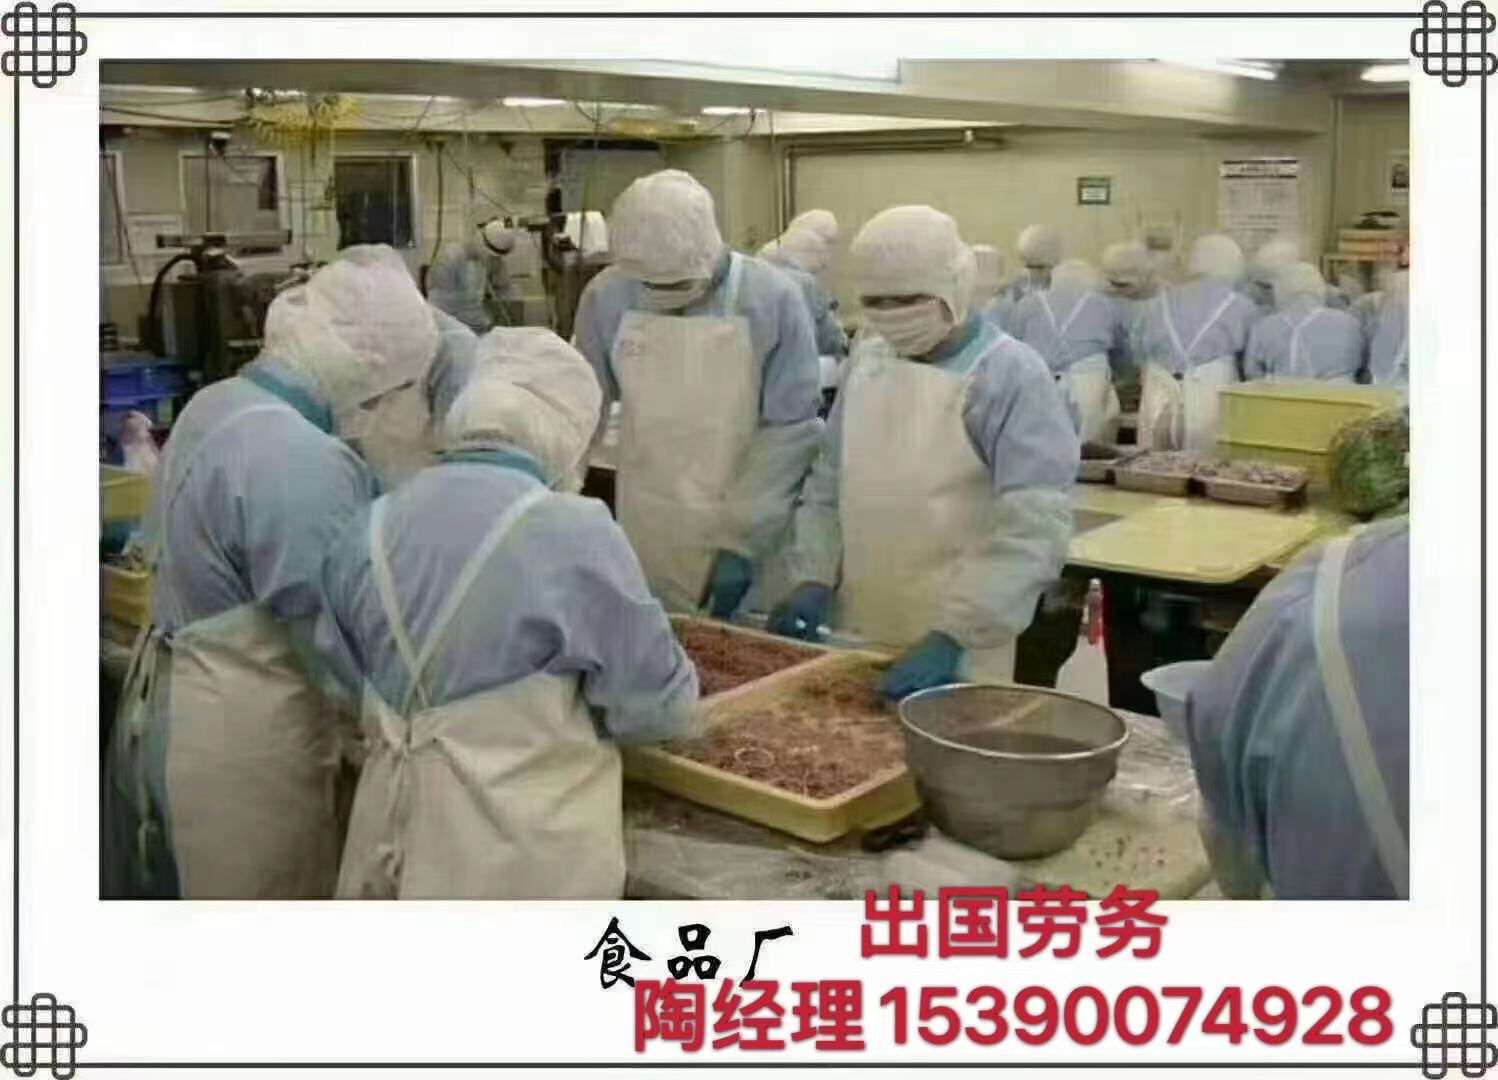 重庆垫江正规合法工签一手单合法工签保签高薪